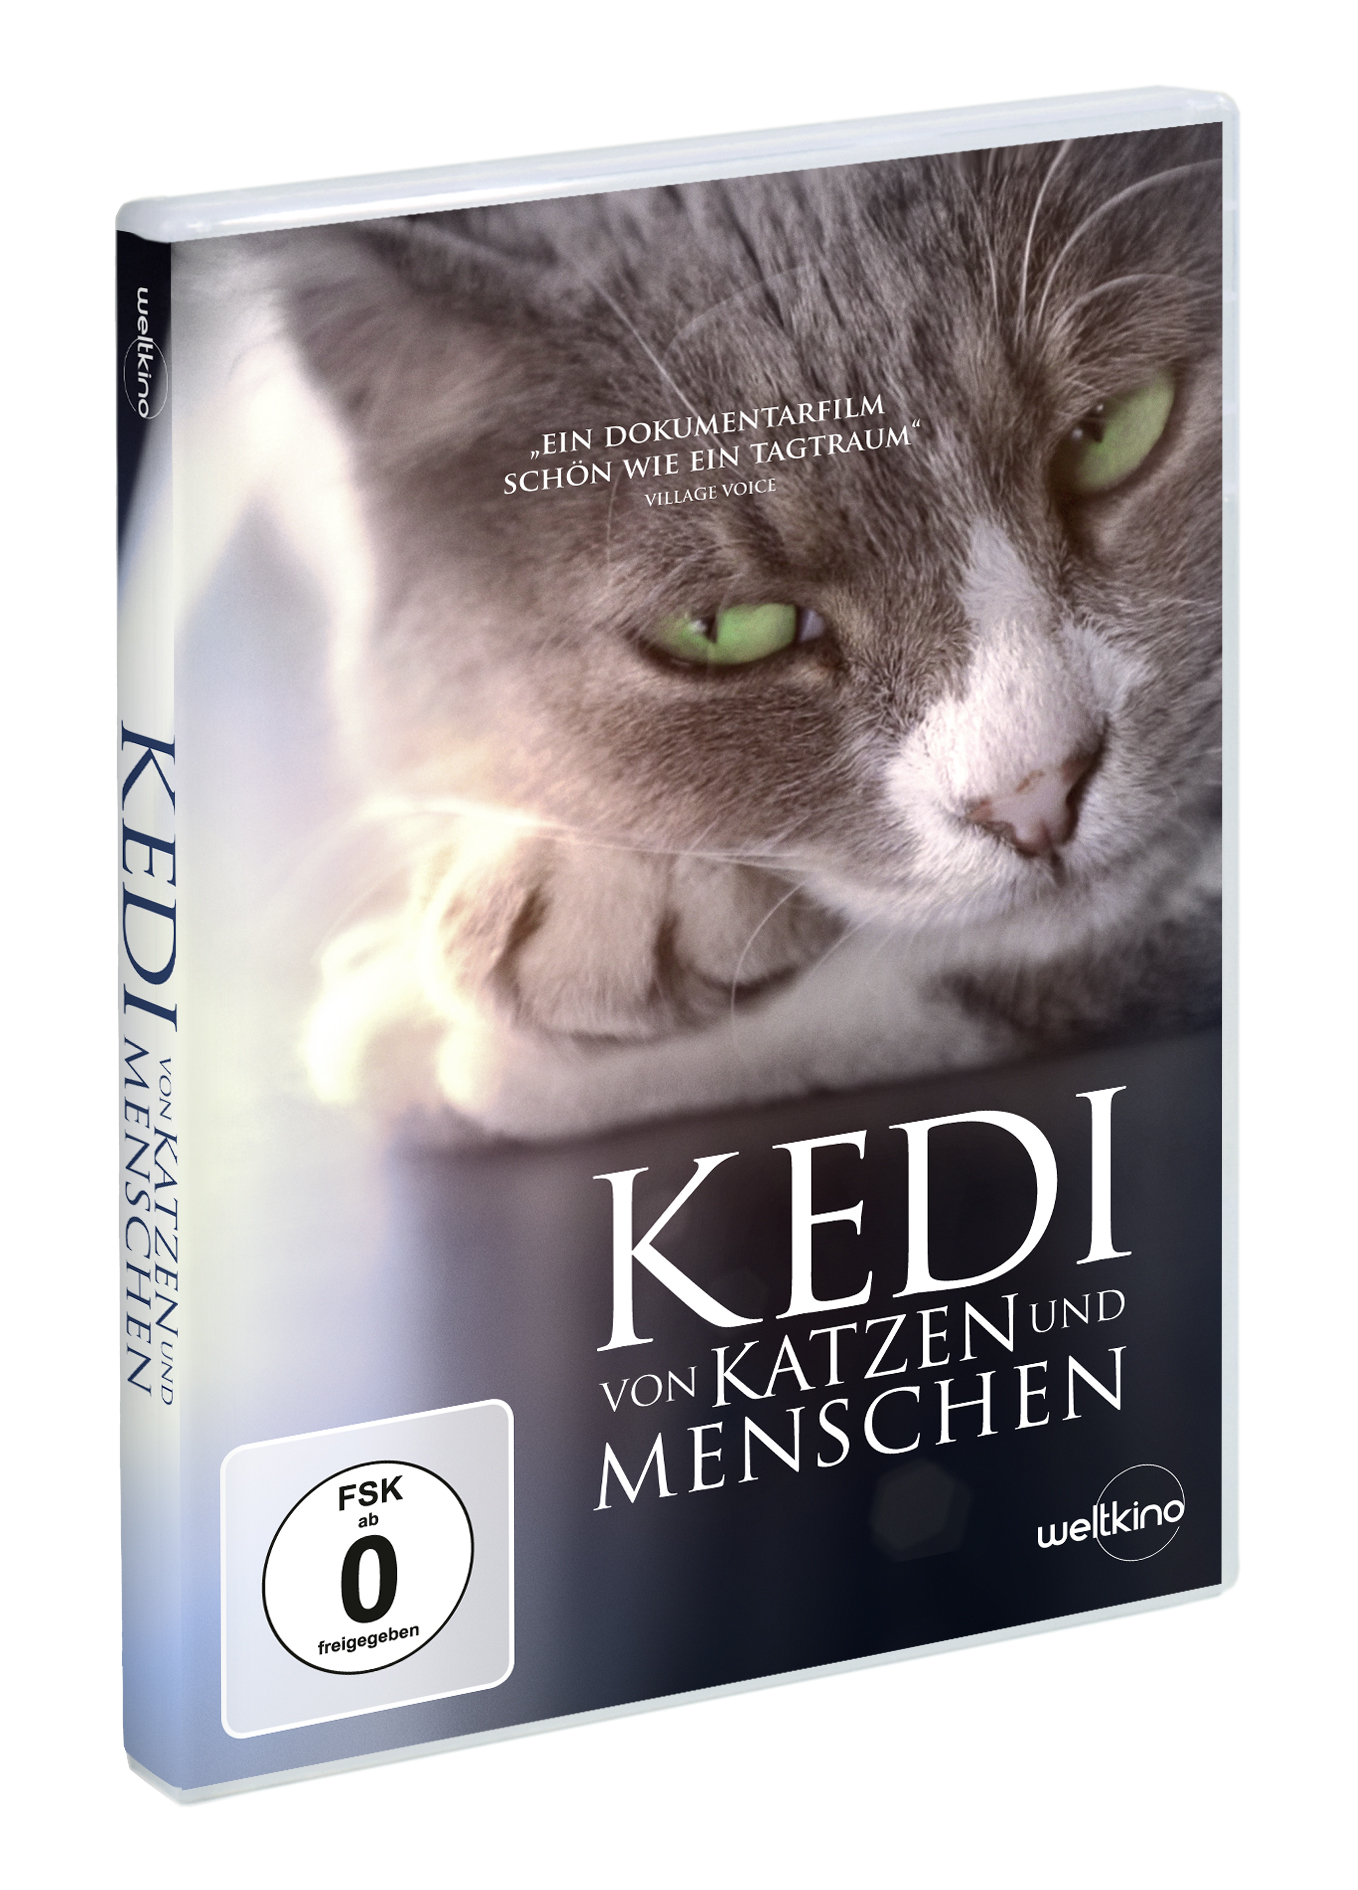 Katzen und Kedi Menschen Von DVD -